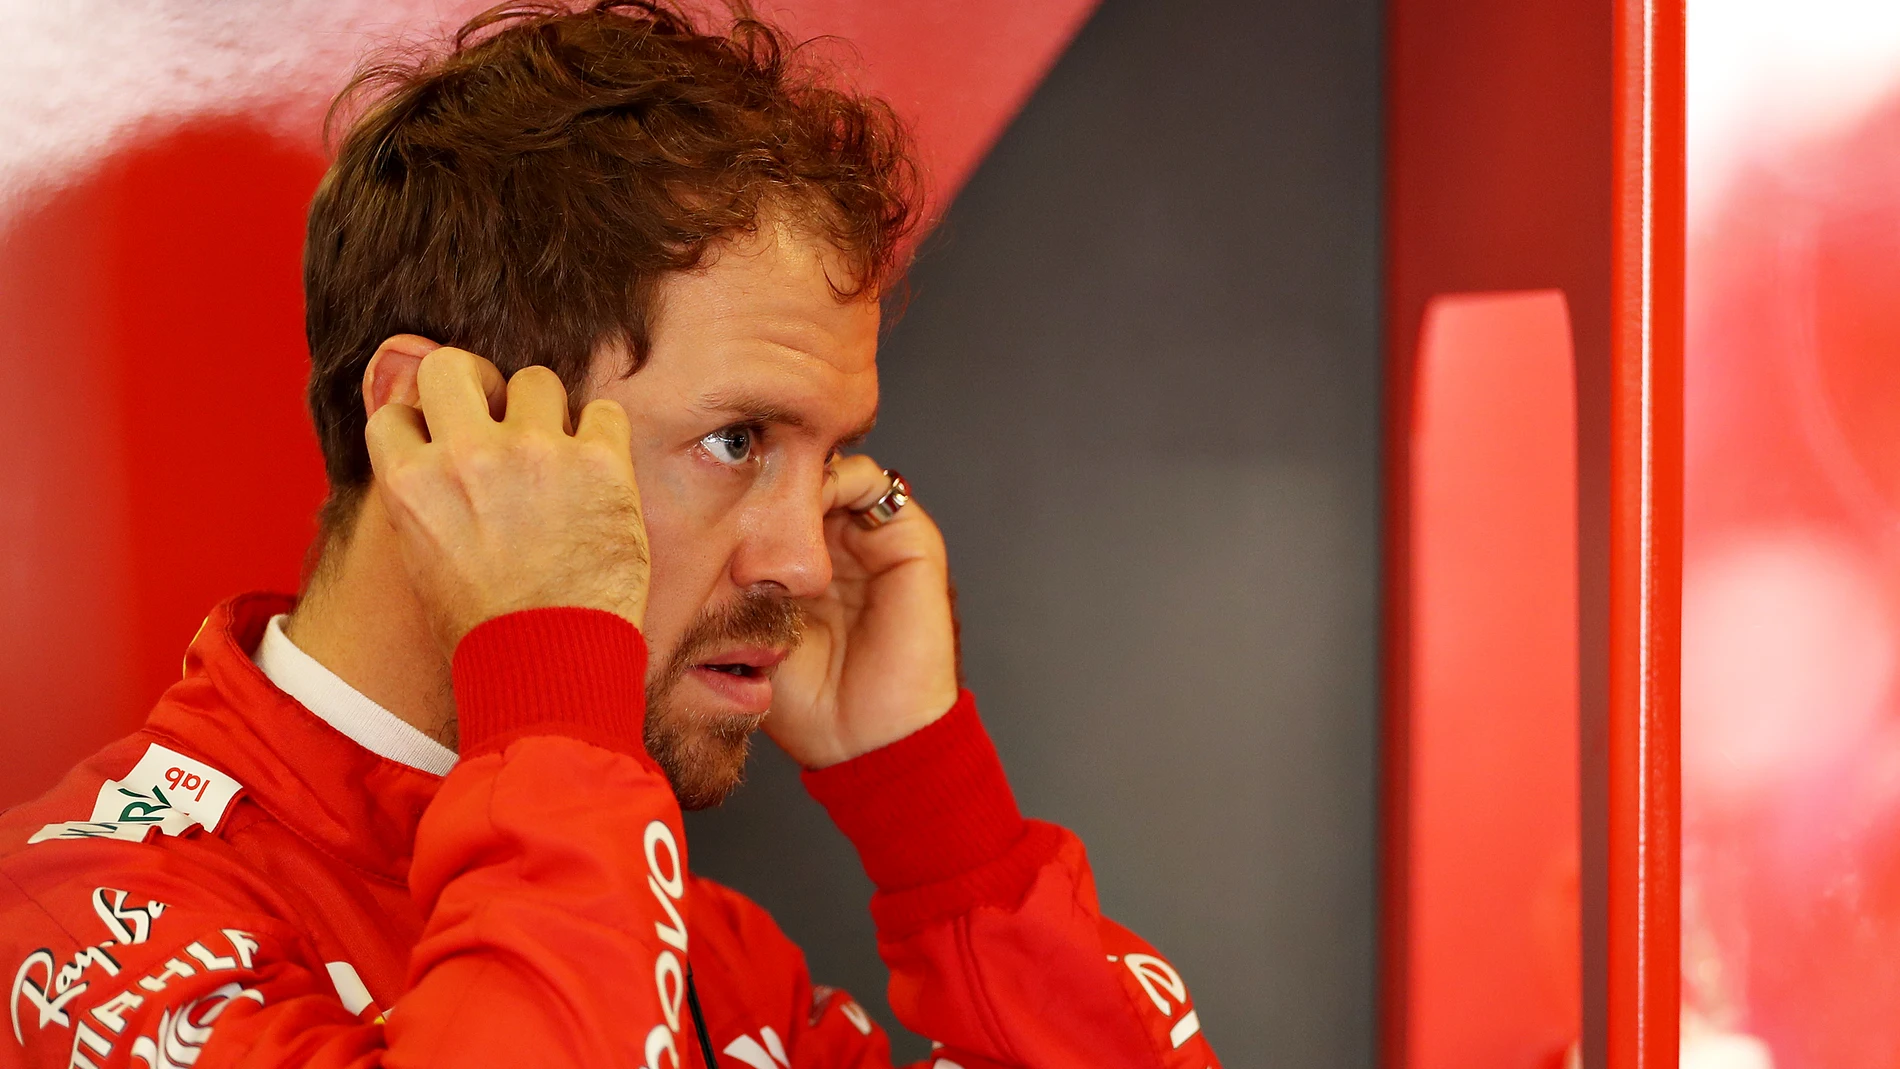 Sebastian Vettel en el box de Ferrari